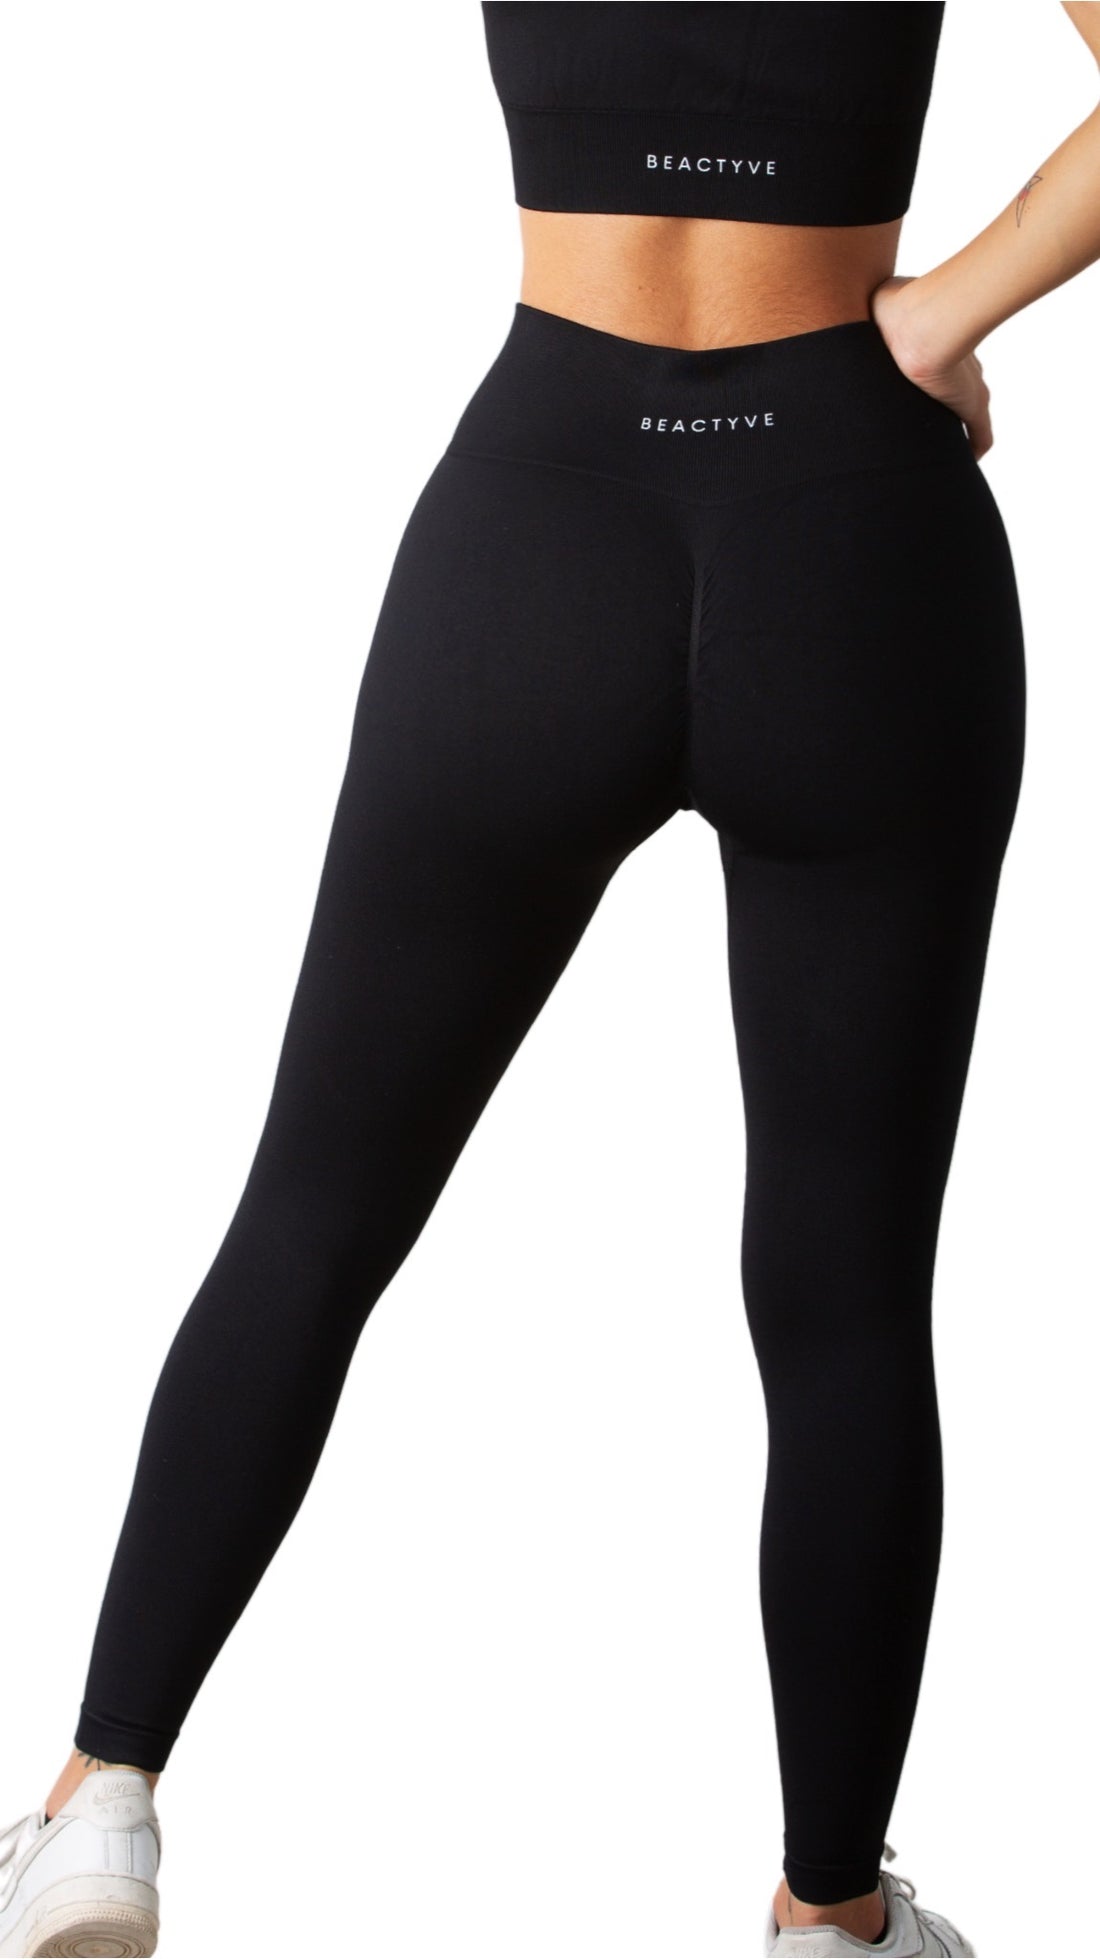 Bombshell sportswear - Black Open Sides Booty Scrunch Leggings Sexy Workout  Size XS - $78 - From Abbey